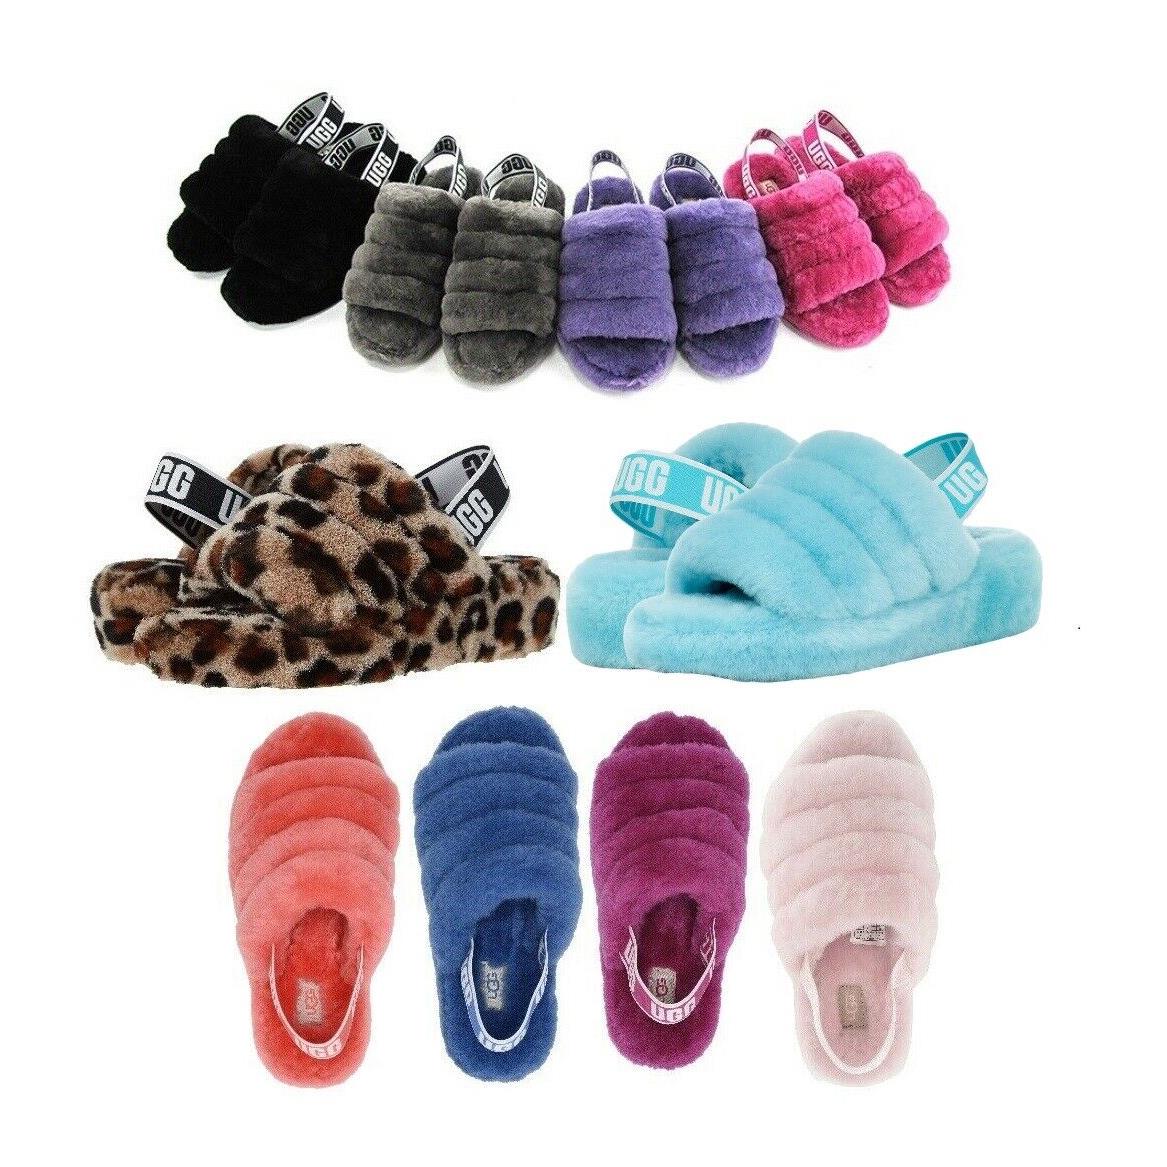 Ugg Soft Fluff Yeah Slide Slippers Women`s Shoes Sandal Black Pink Chestnut